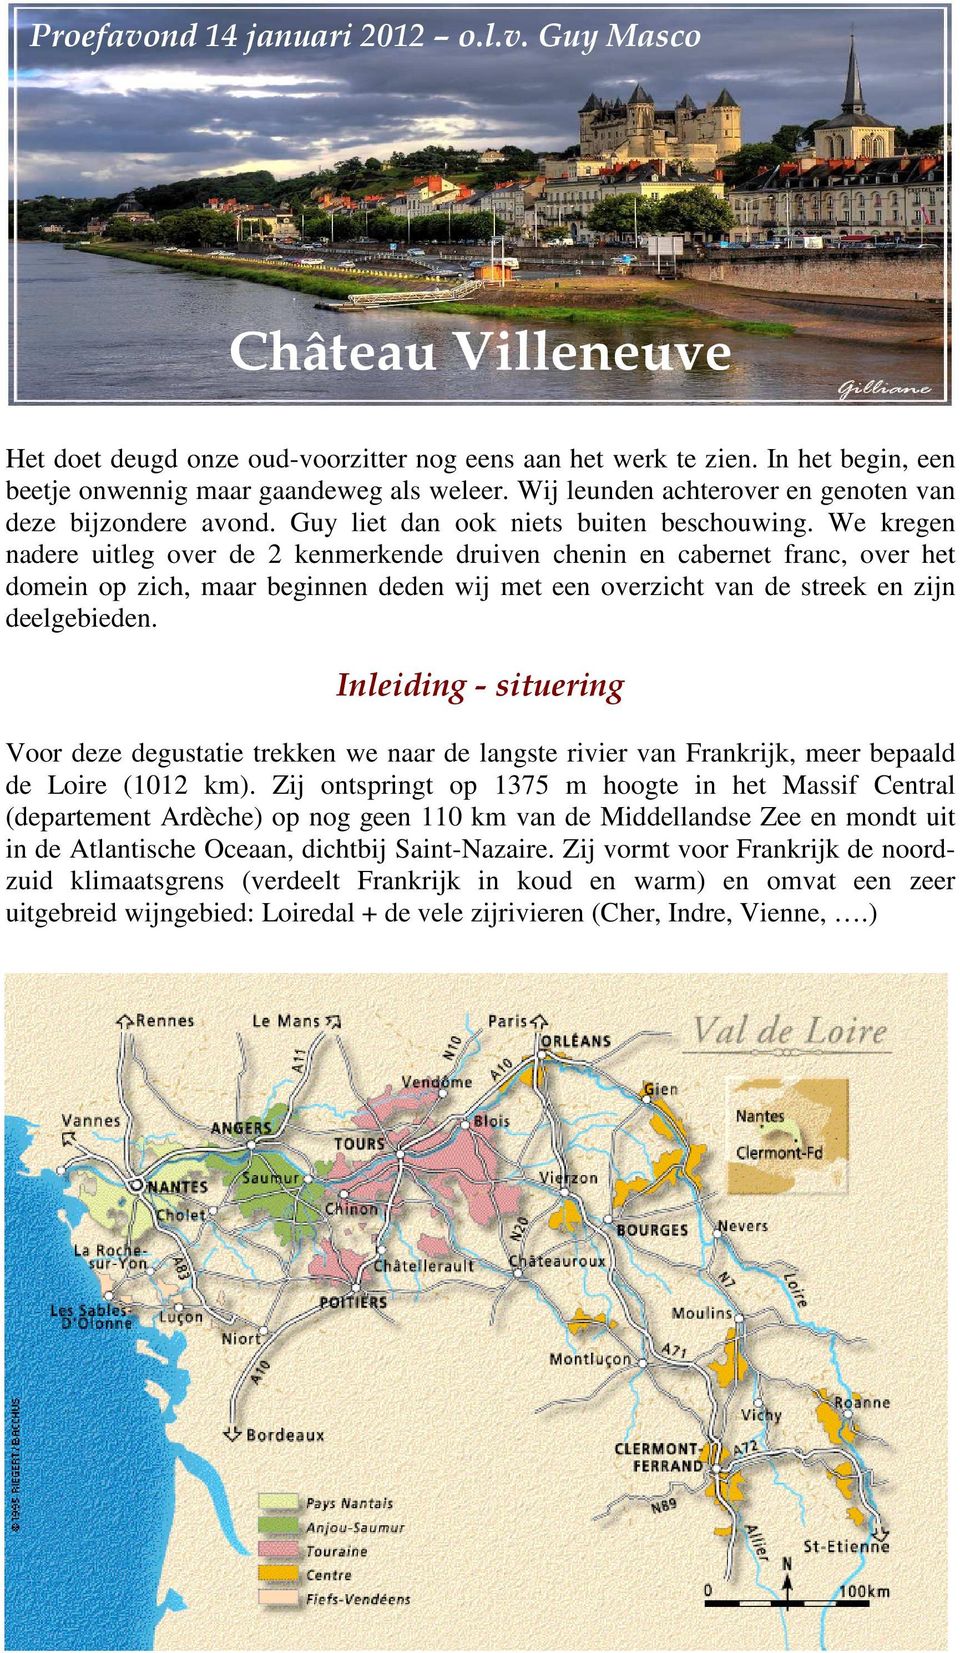 We kregen nadere uitleg over de 2 kenmerkende druiven chenin en cabernet franc, over het domein op zich, maar beginnen deden wij met een overzicht van de streek en zijn deelgebieden.